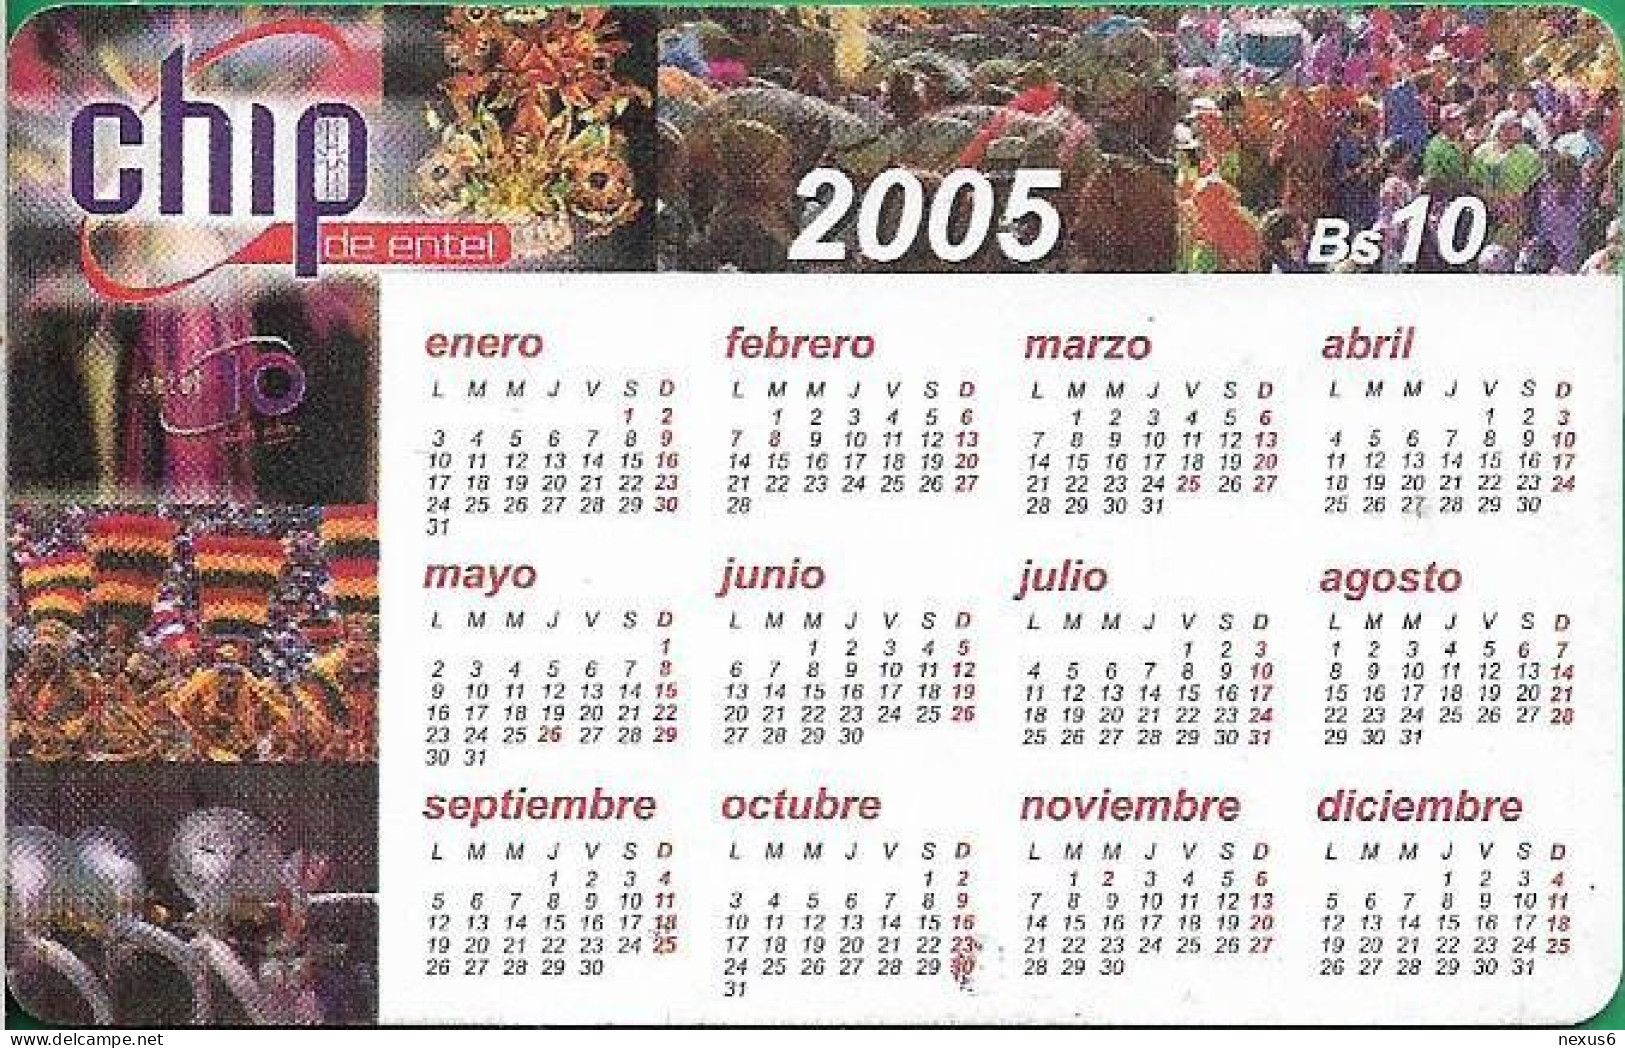 Bolivia - Entel (Chip) - Calendar 2005, Gem5 Black, 2004, 10Bs, Used - Bolivie